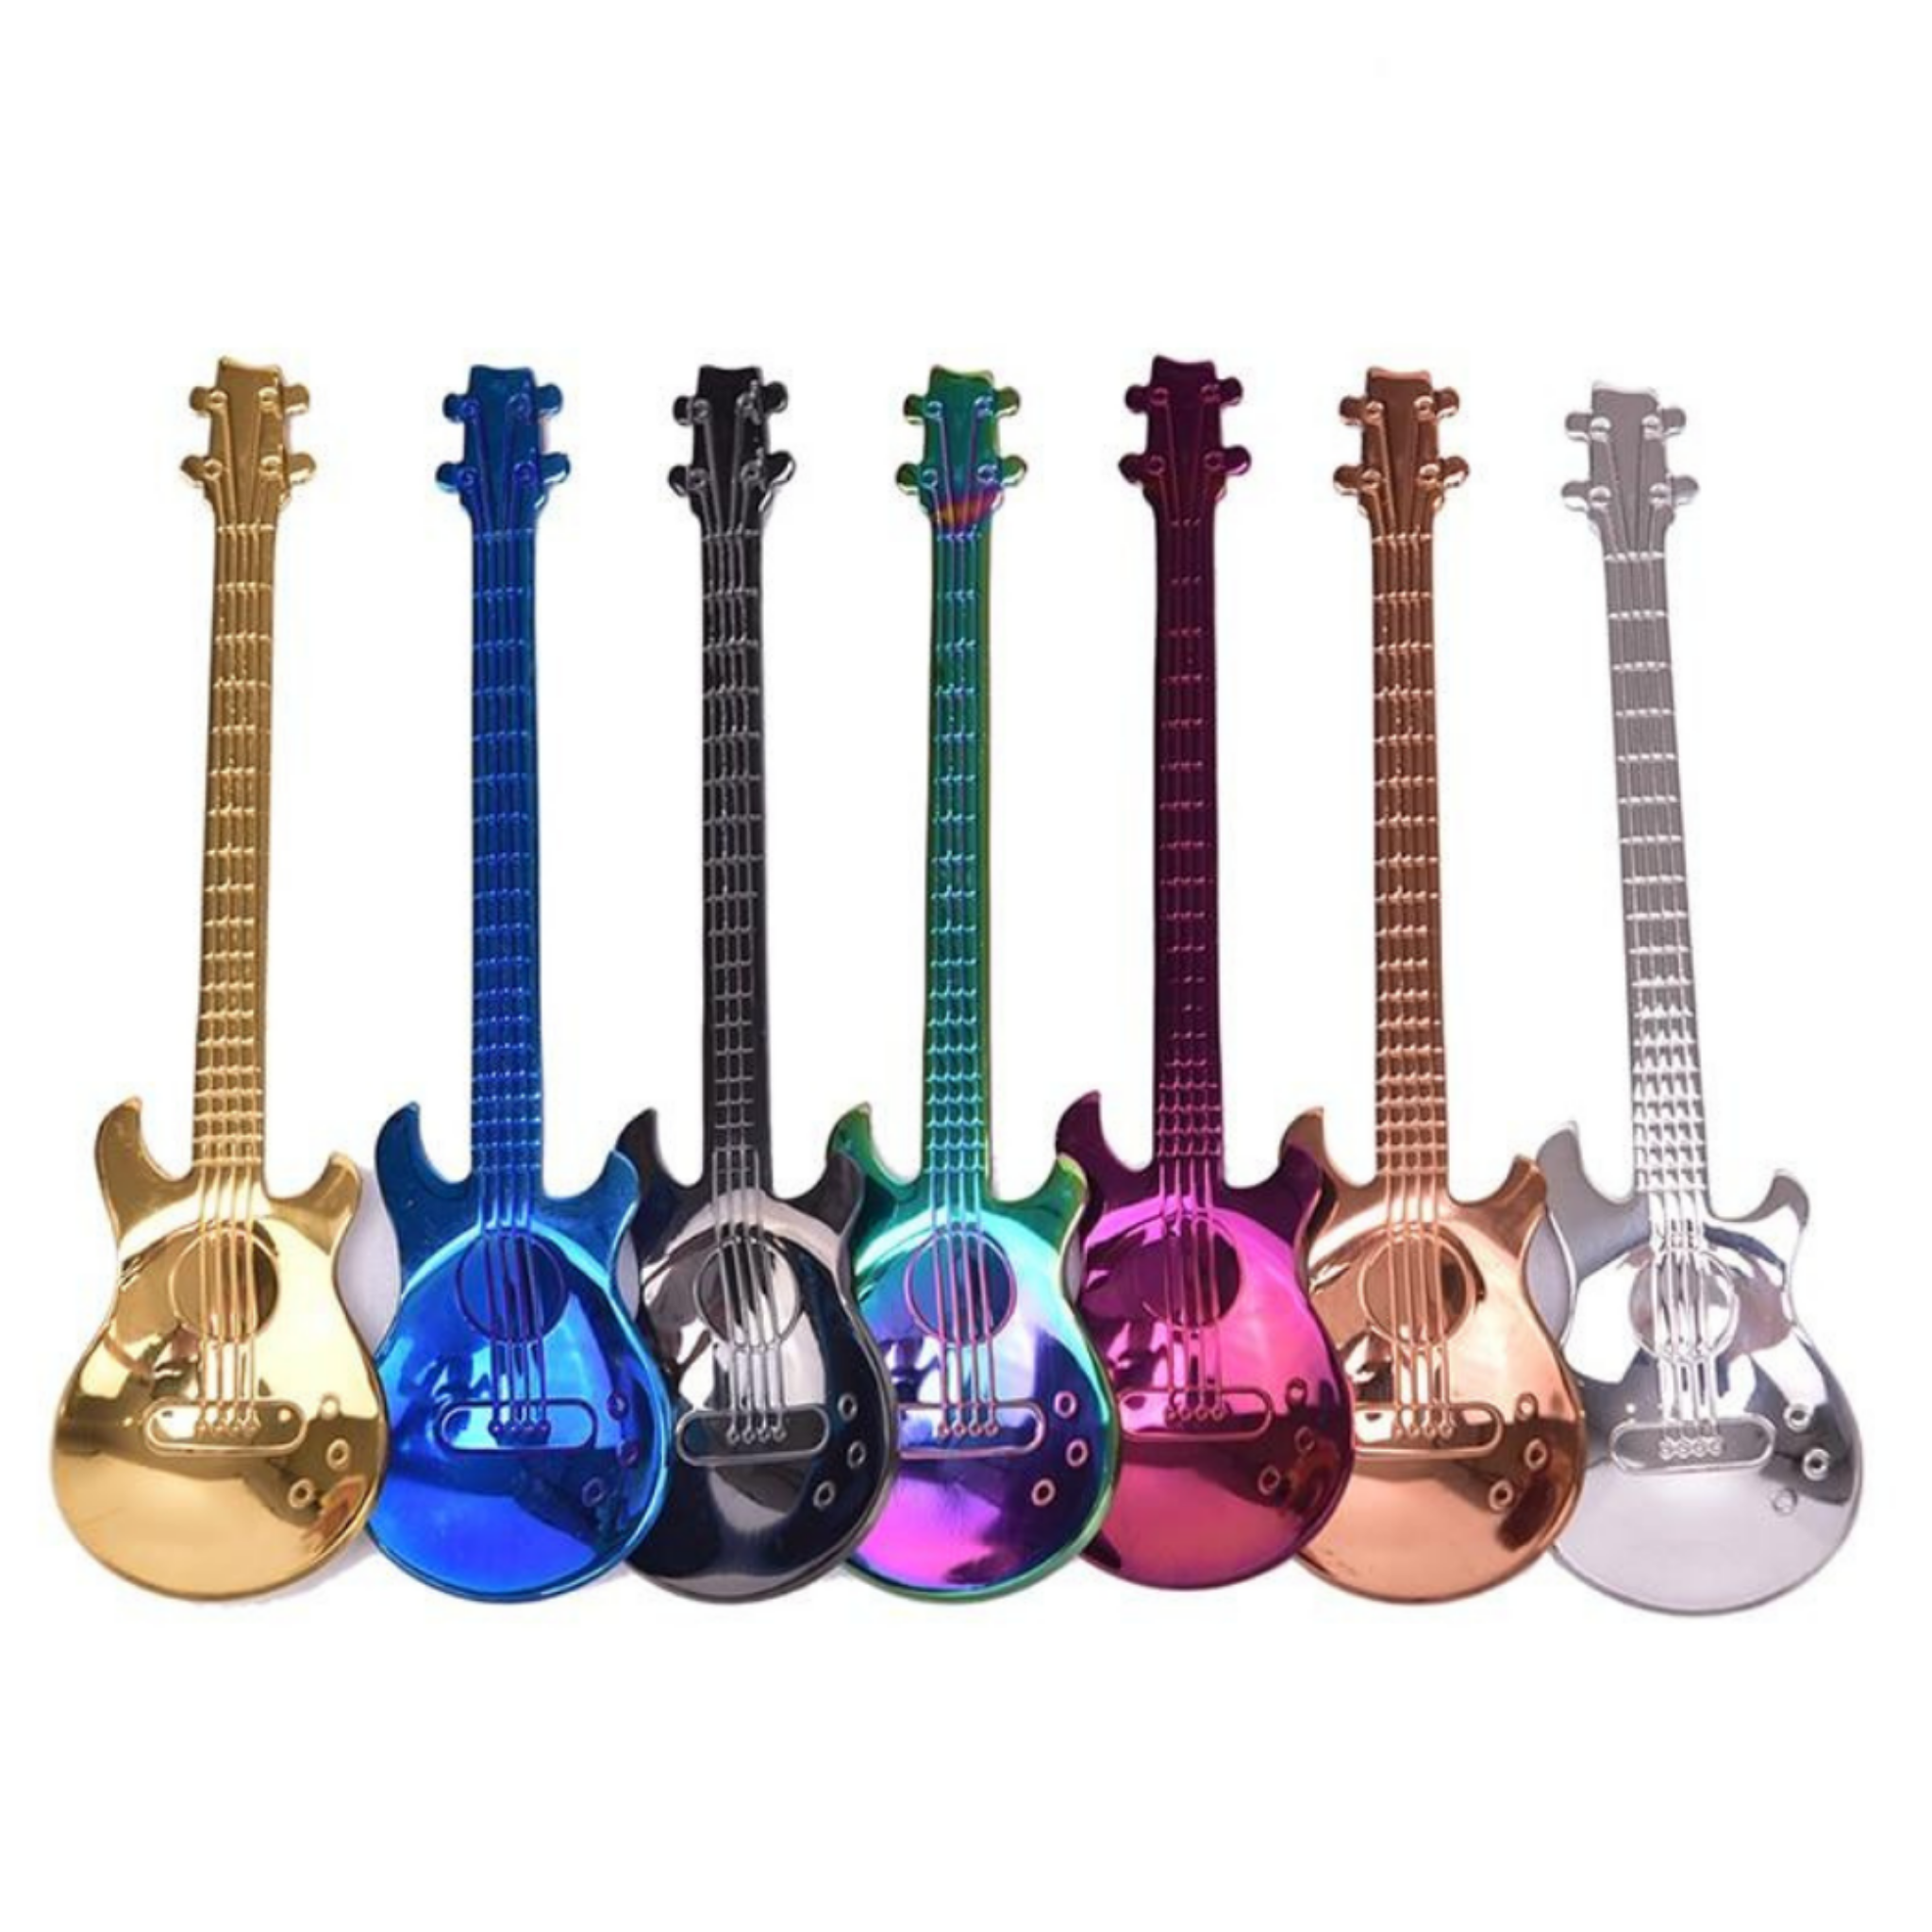 Eccentric Guitar Spoons - 7Pcs